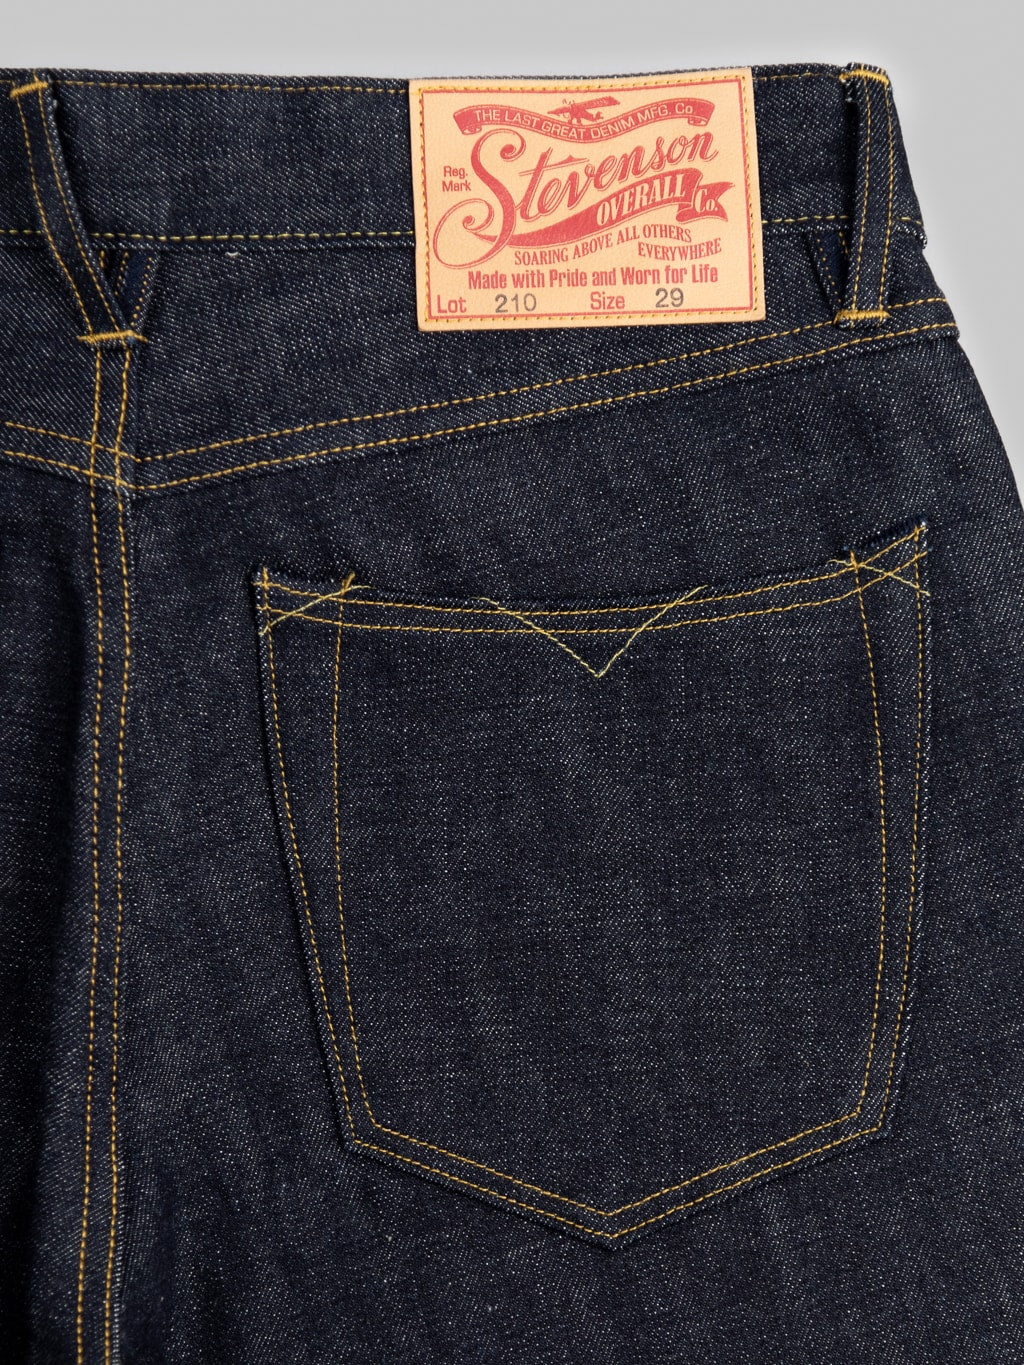 Stevenson Overall Big Sur 210 14oz Slim Tapered Jeans pocket detail